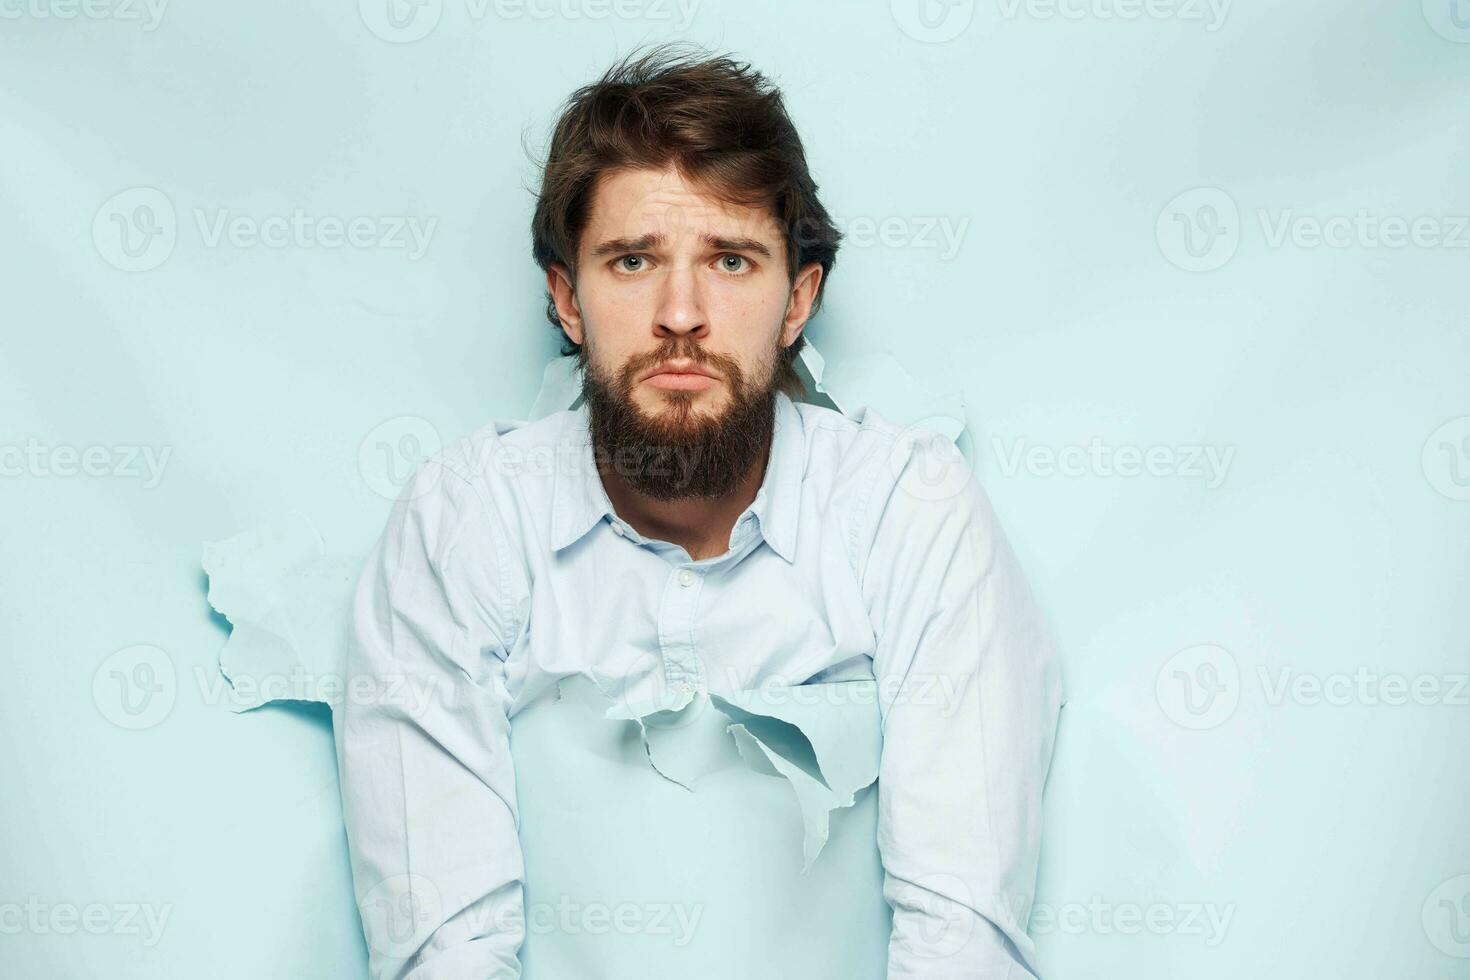 emotional Mann im Hemd Arbeit Unzufriedenheit Lebensstil foto